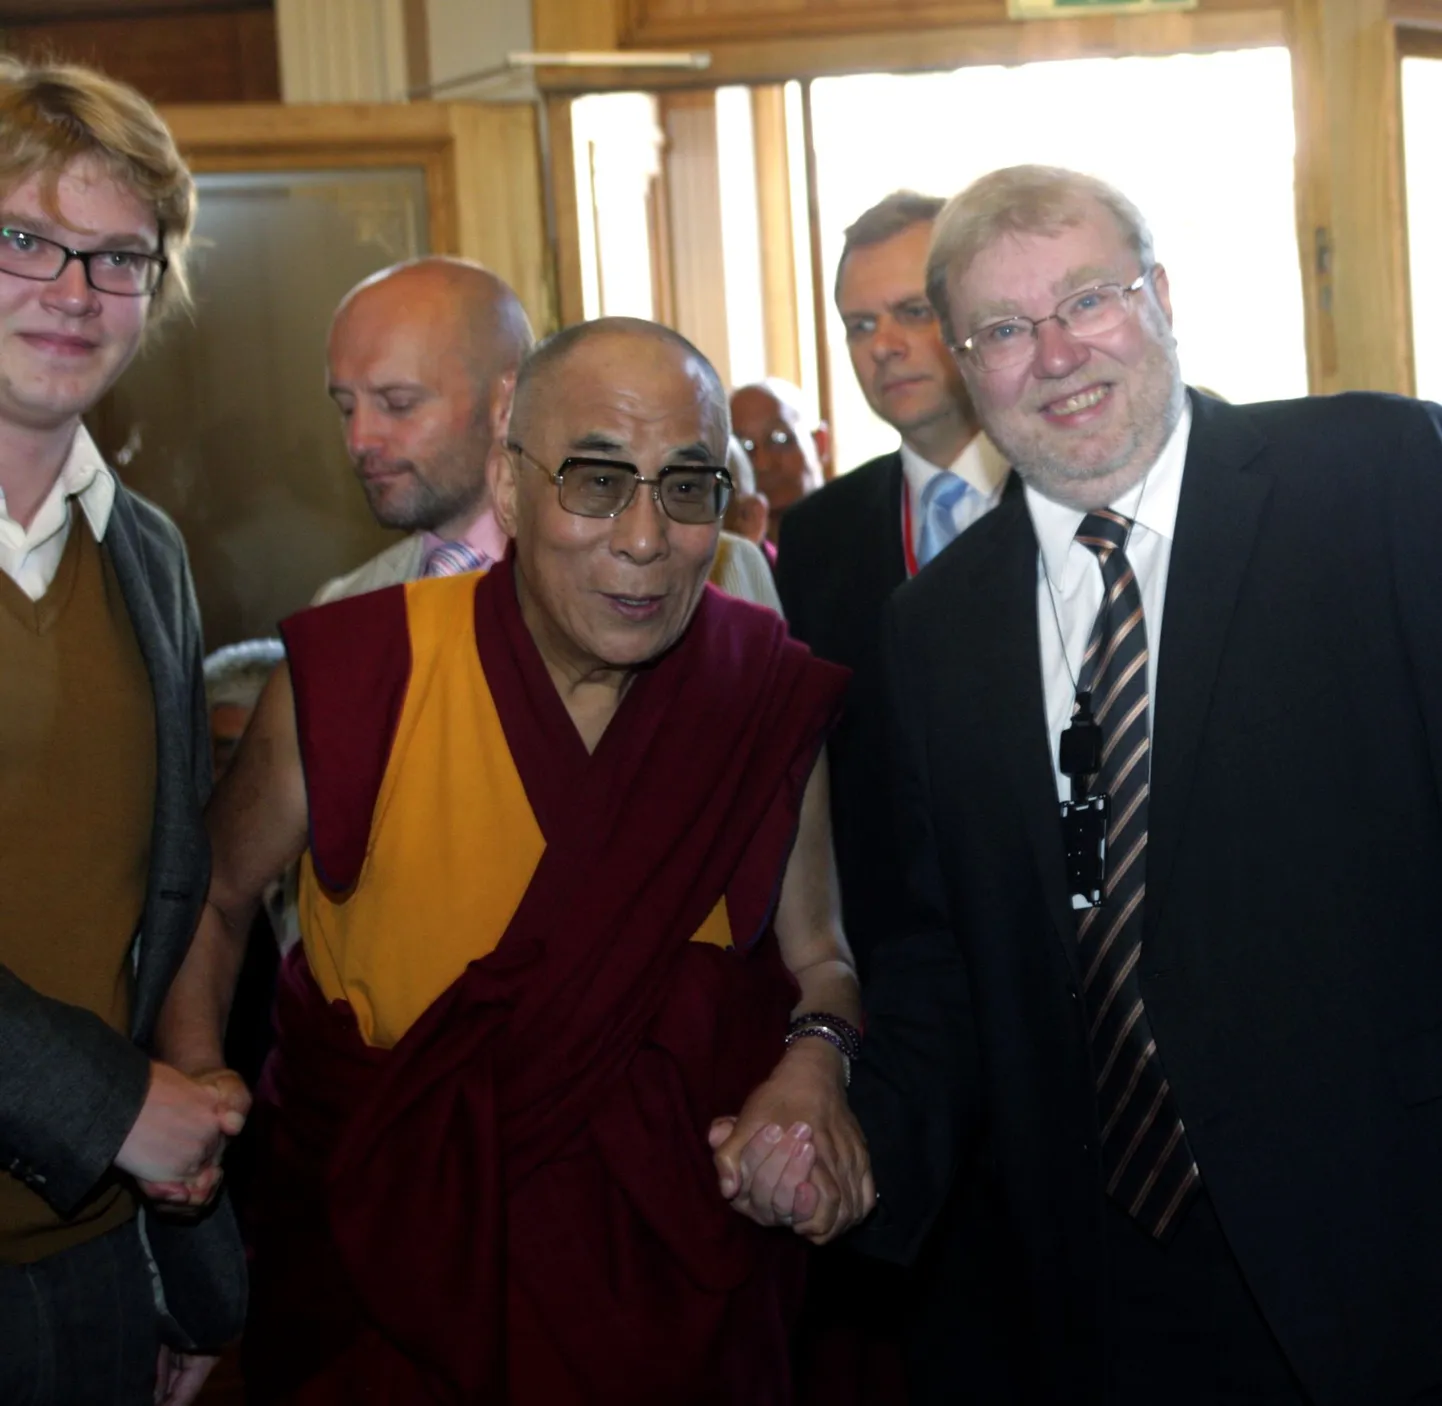 Dalai-laama kätest hoiavad Mart Laar (paremal) ja tema poeg Mihkel Laar (vasakul).